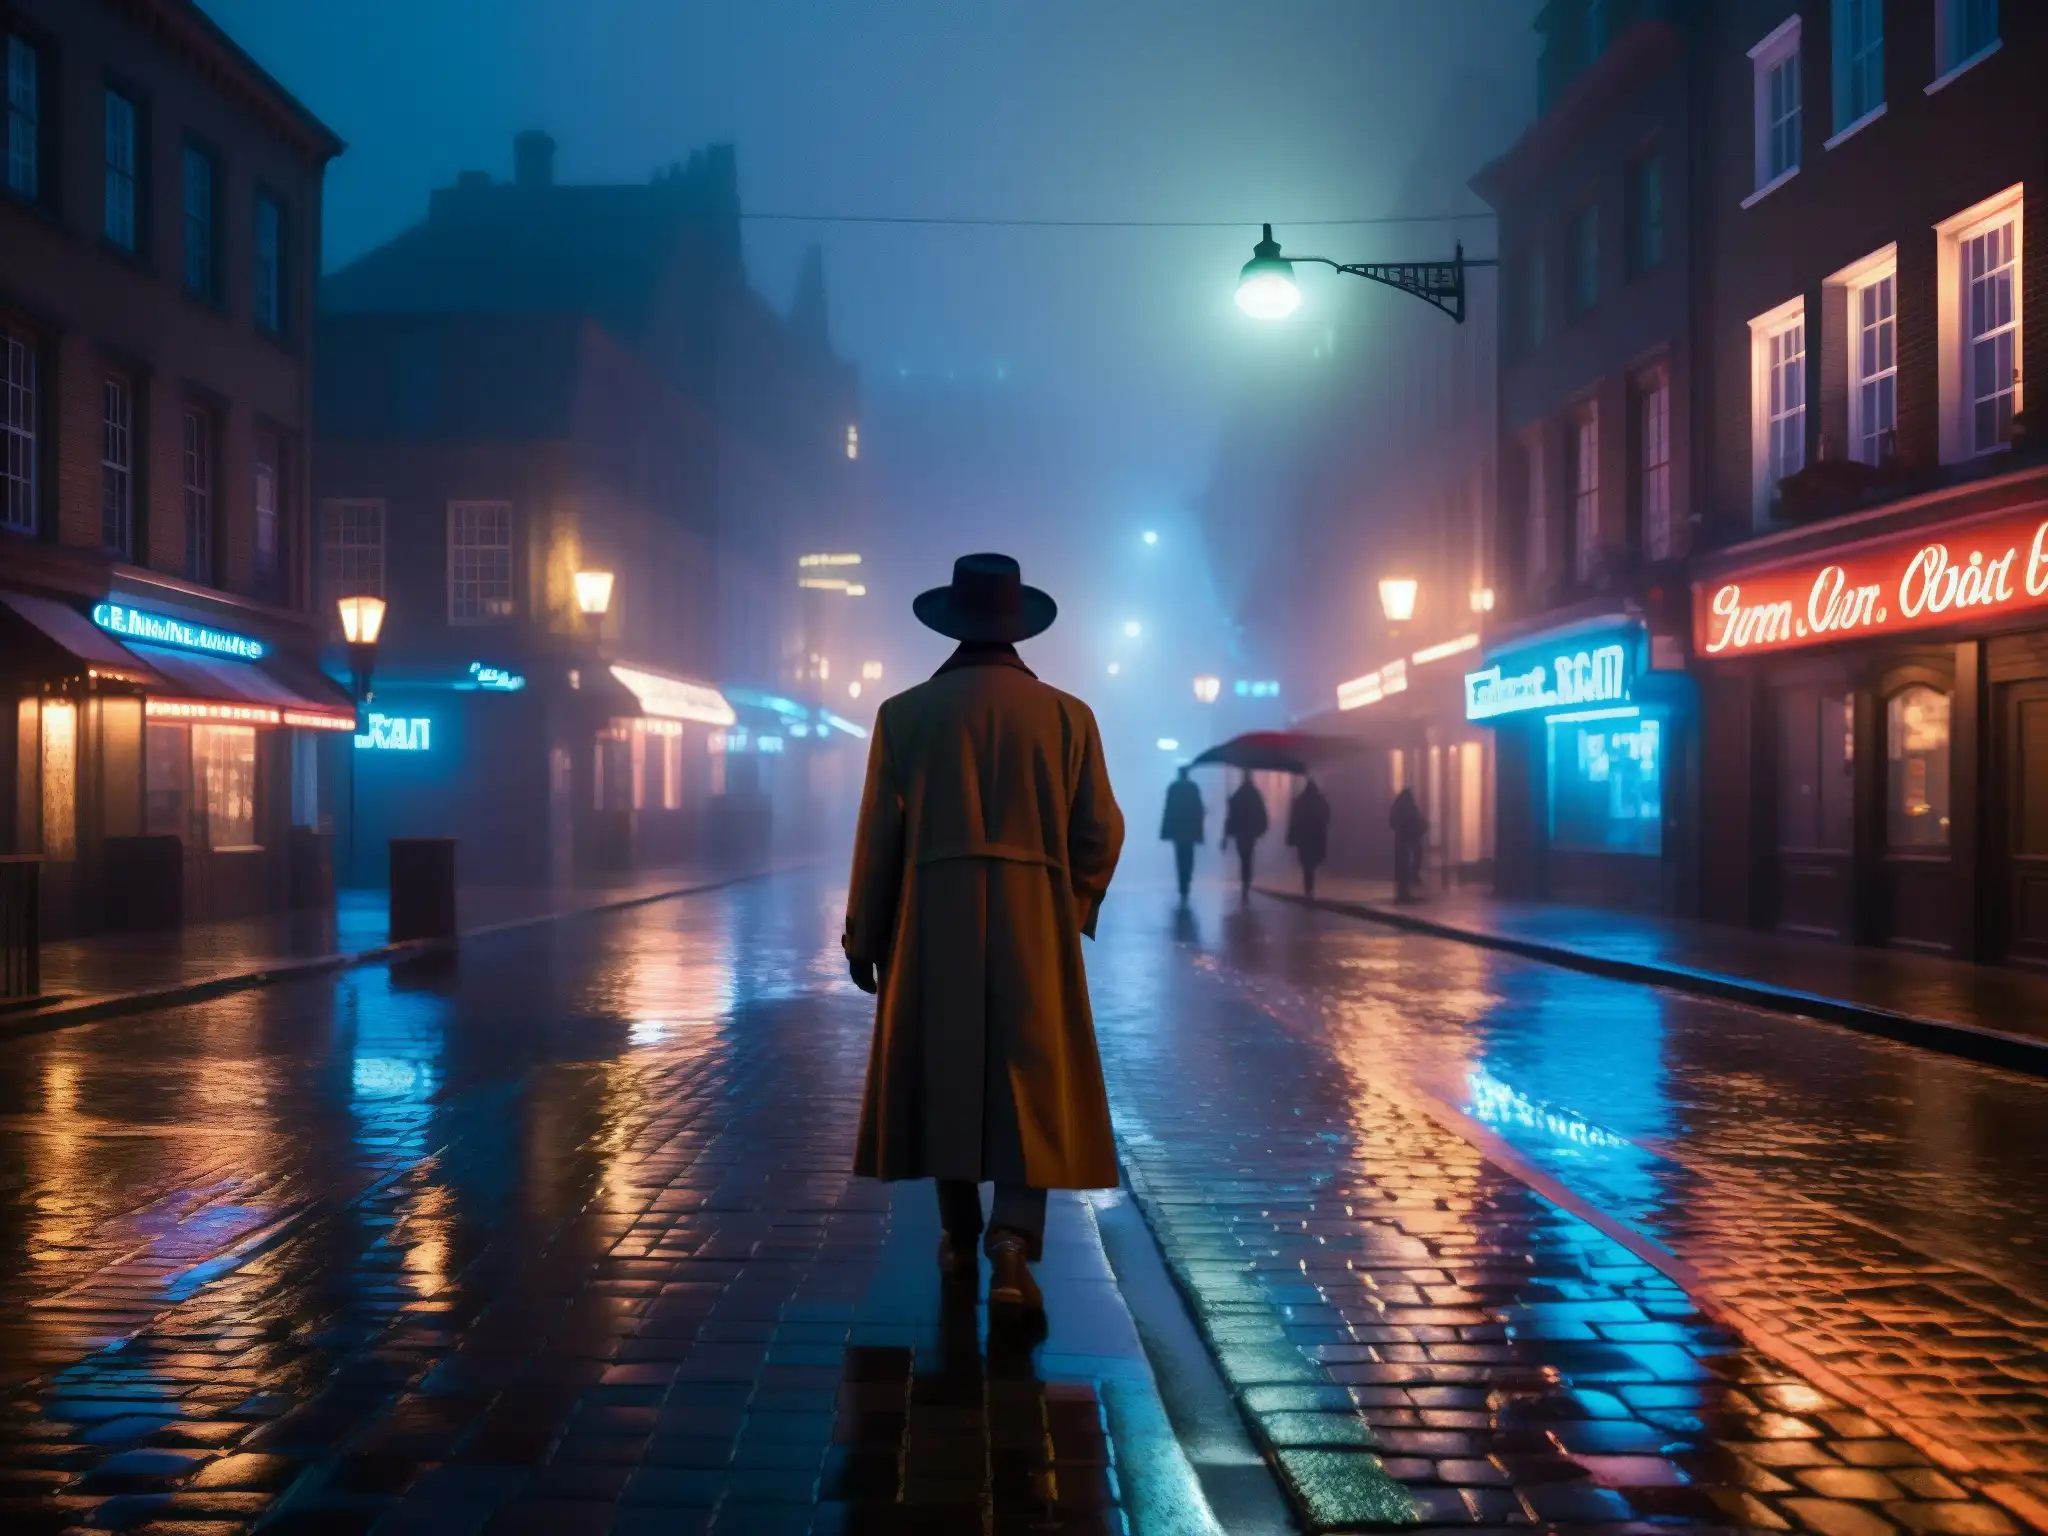 Un misterioso paseo nocturno por la ciudad envuelta en neblina, evocando enigma y leyendas urbanas